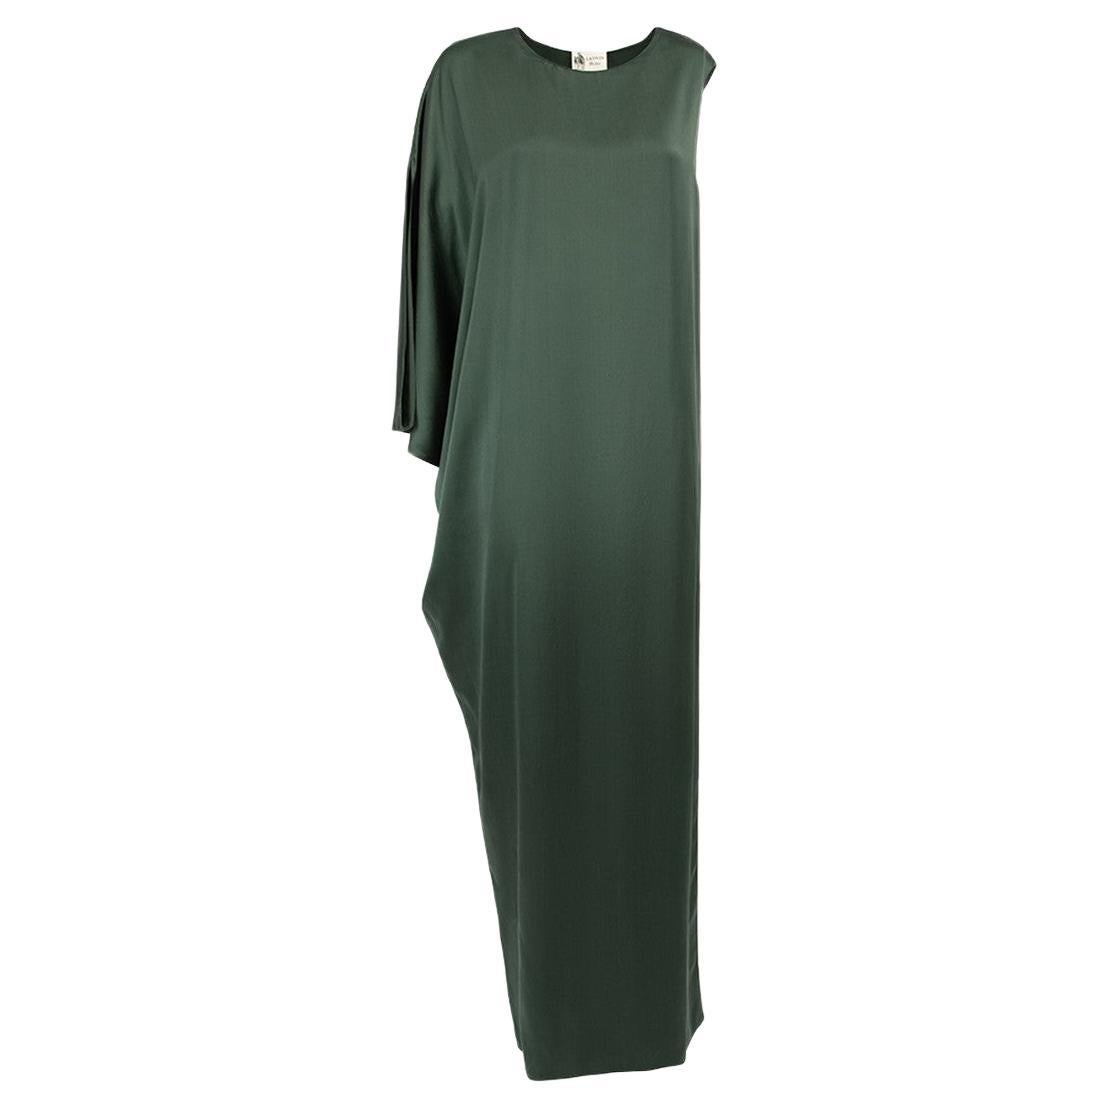 Pre-Loved Lanvin Women's Green Silk Asymmetric One Sleeve Dress